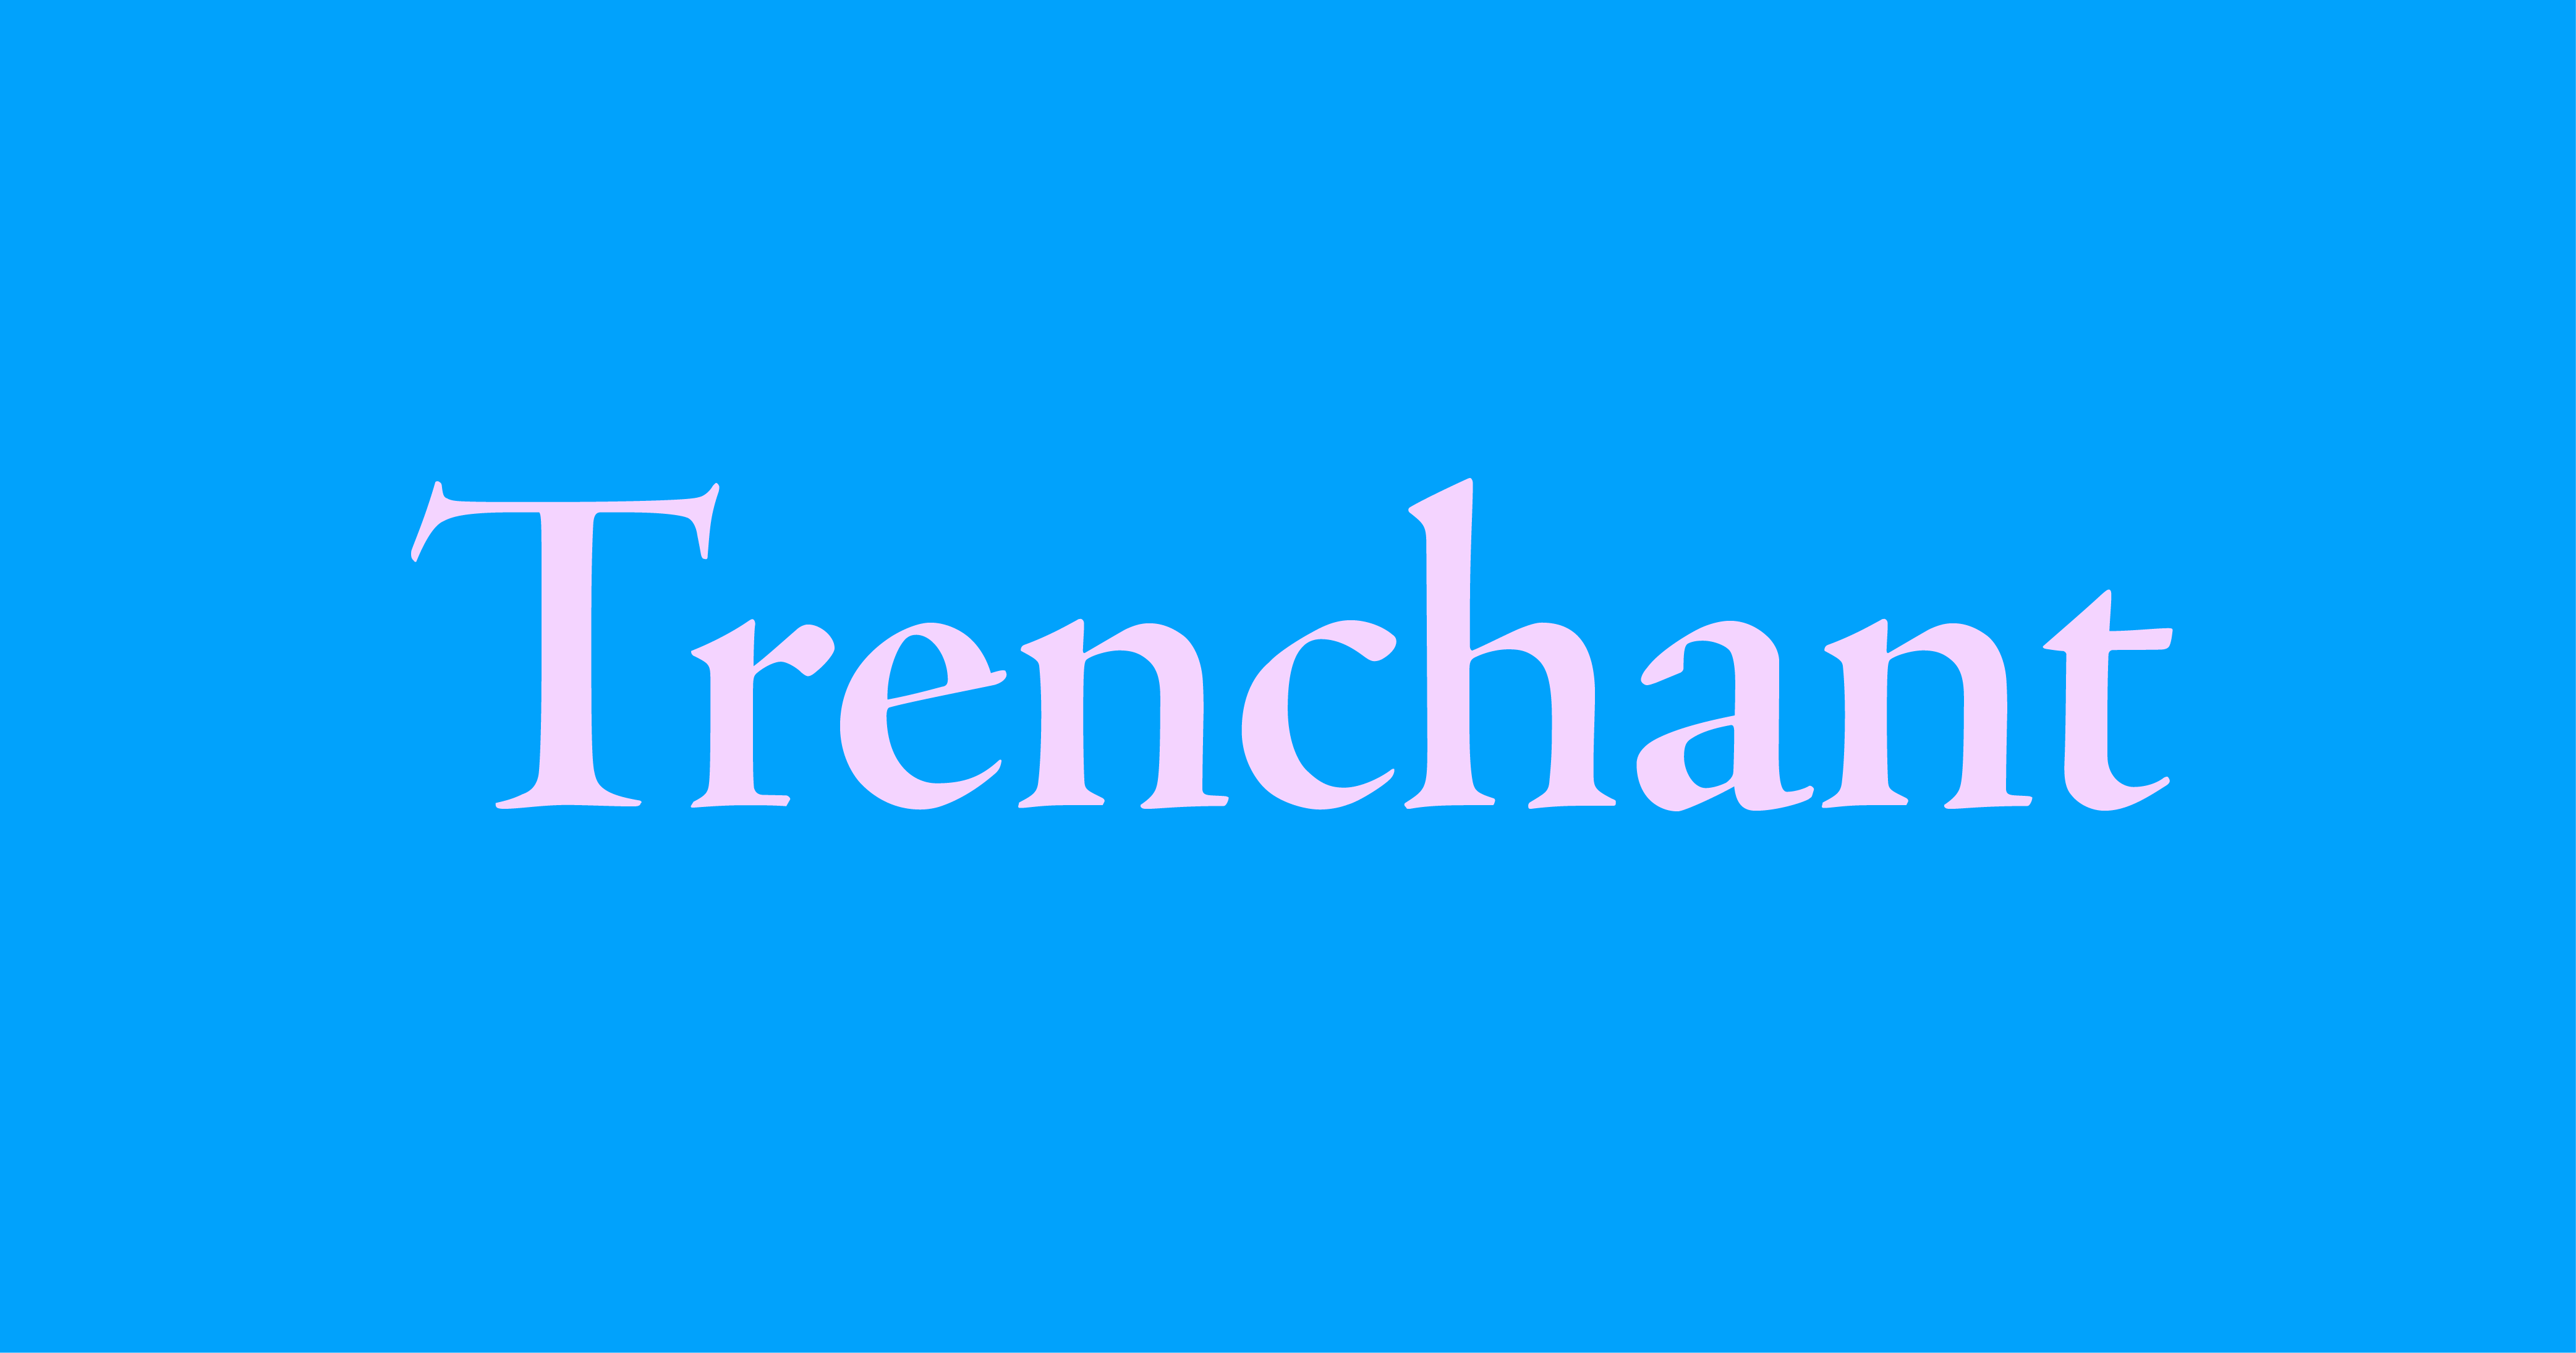 Trenchant